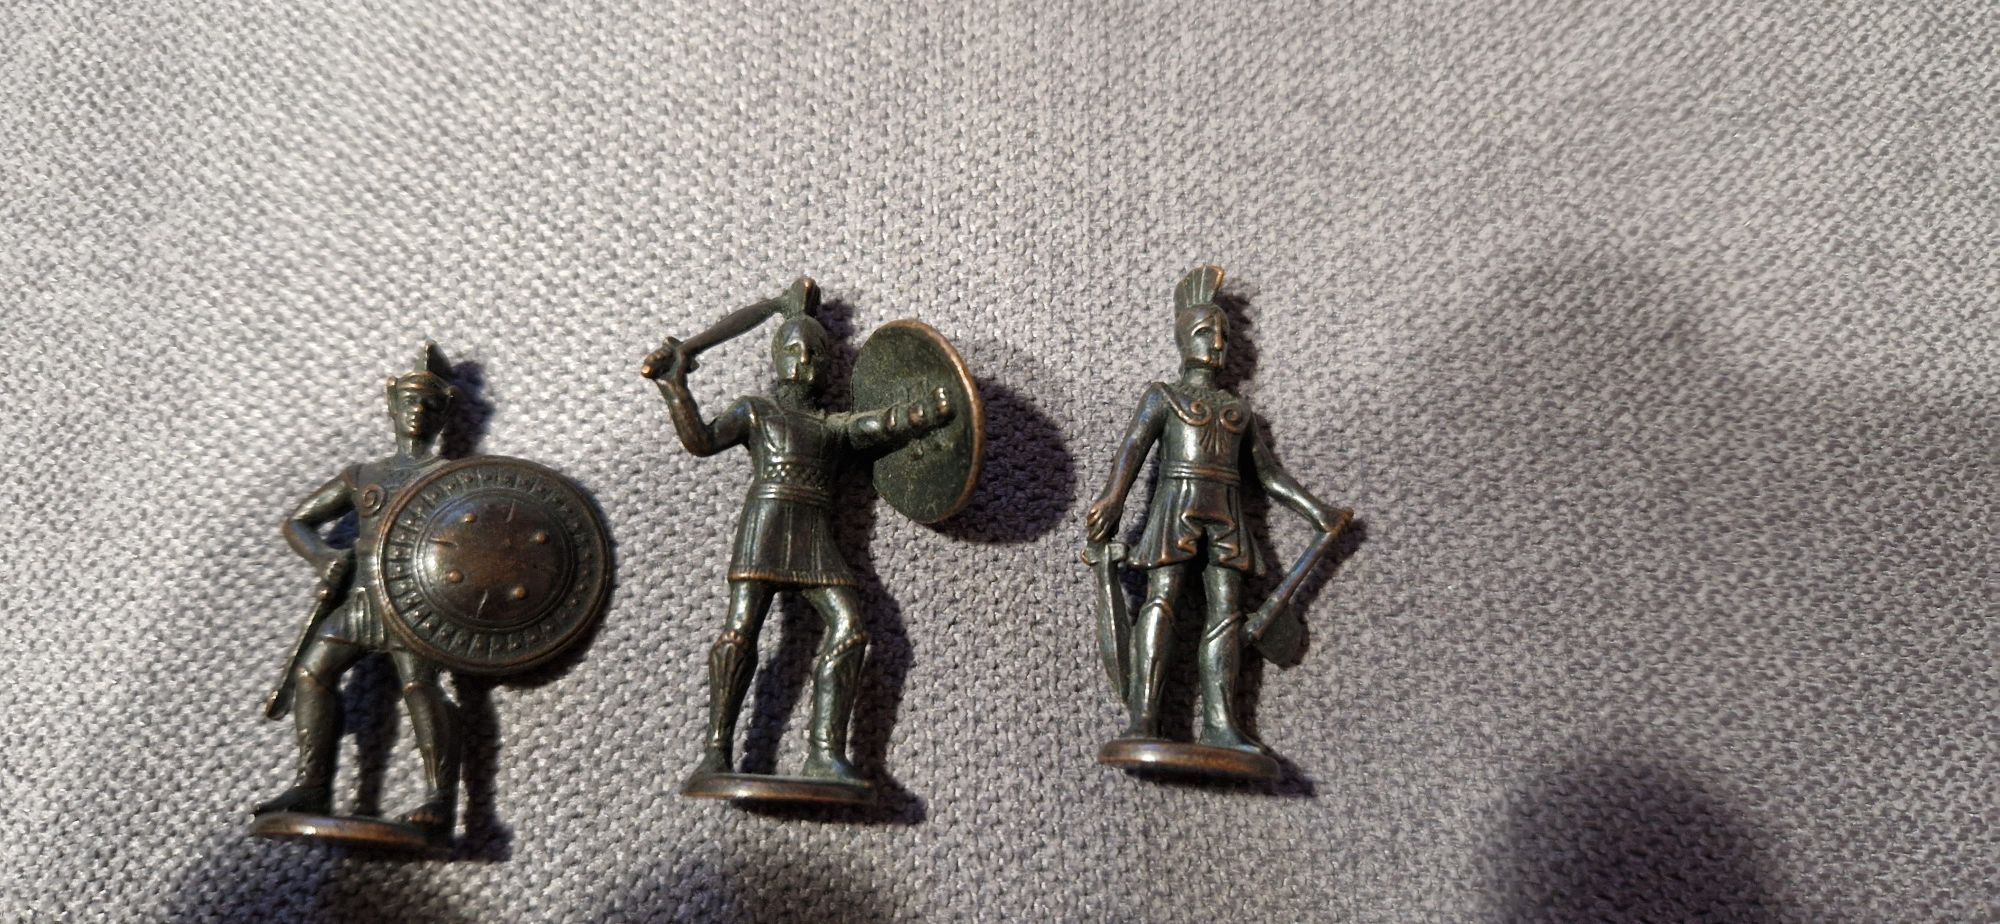 Grecy metalowe figurki z kinder niespodzianka